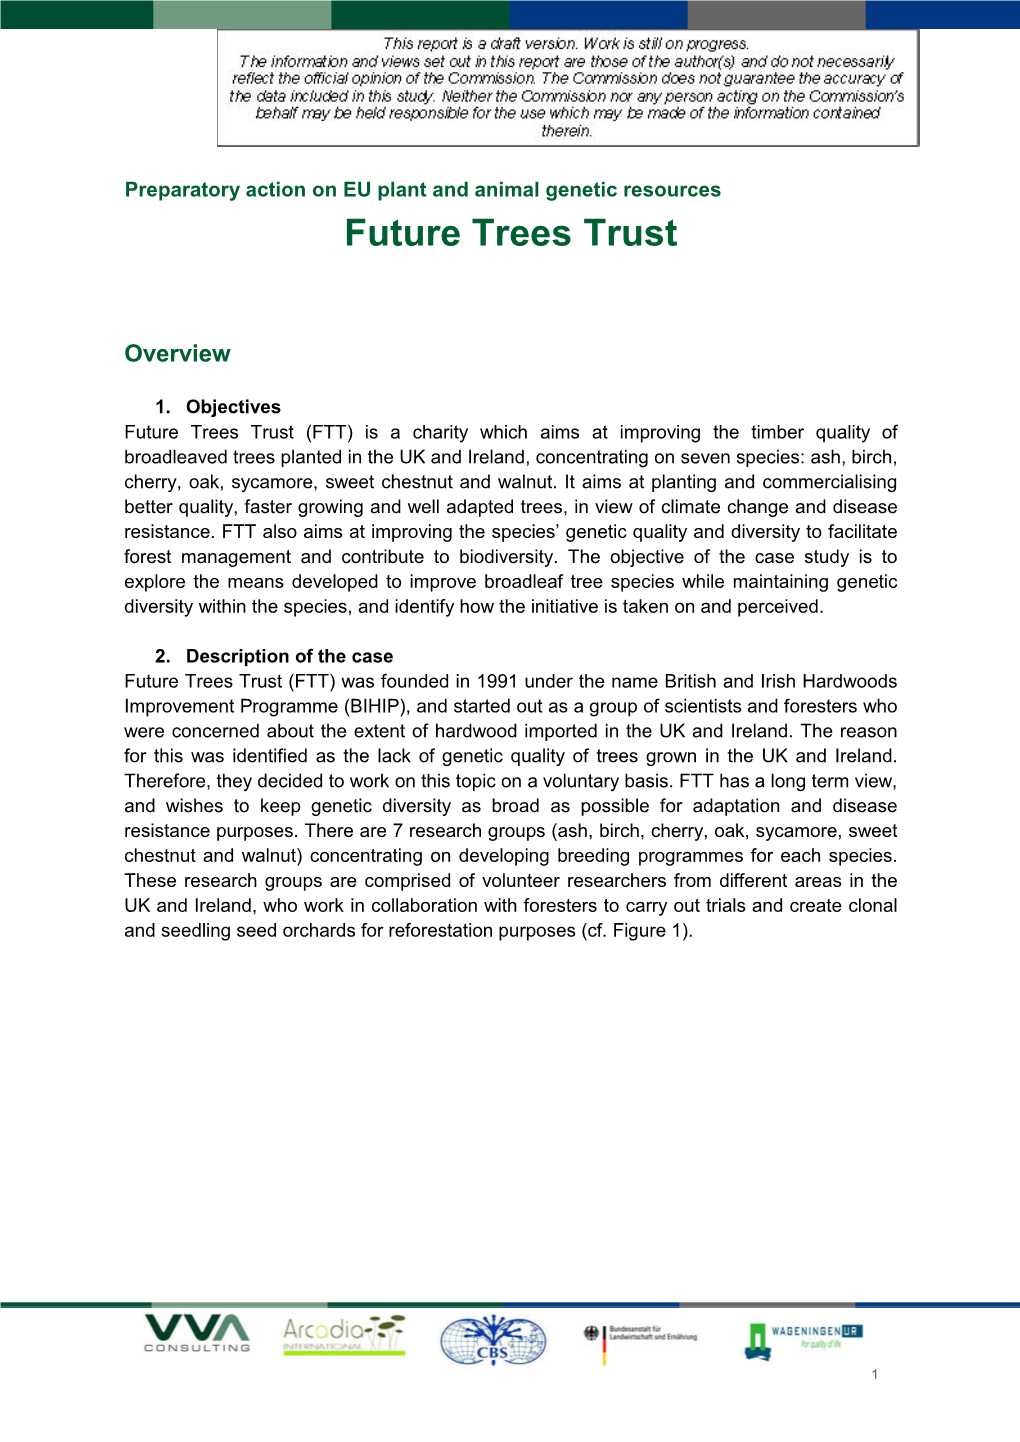 Future Trees Trust